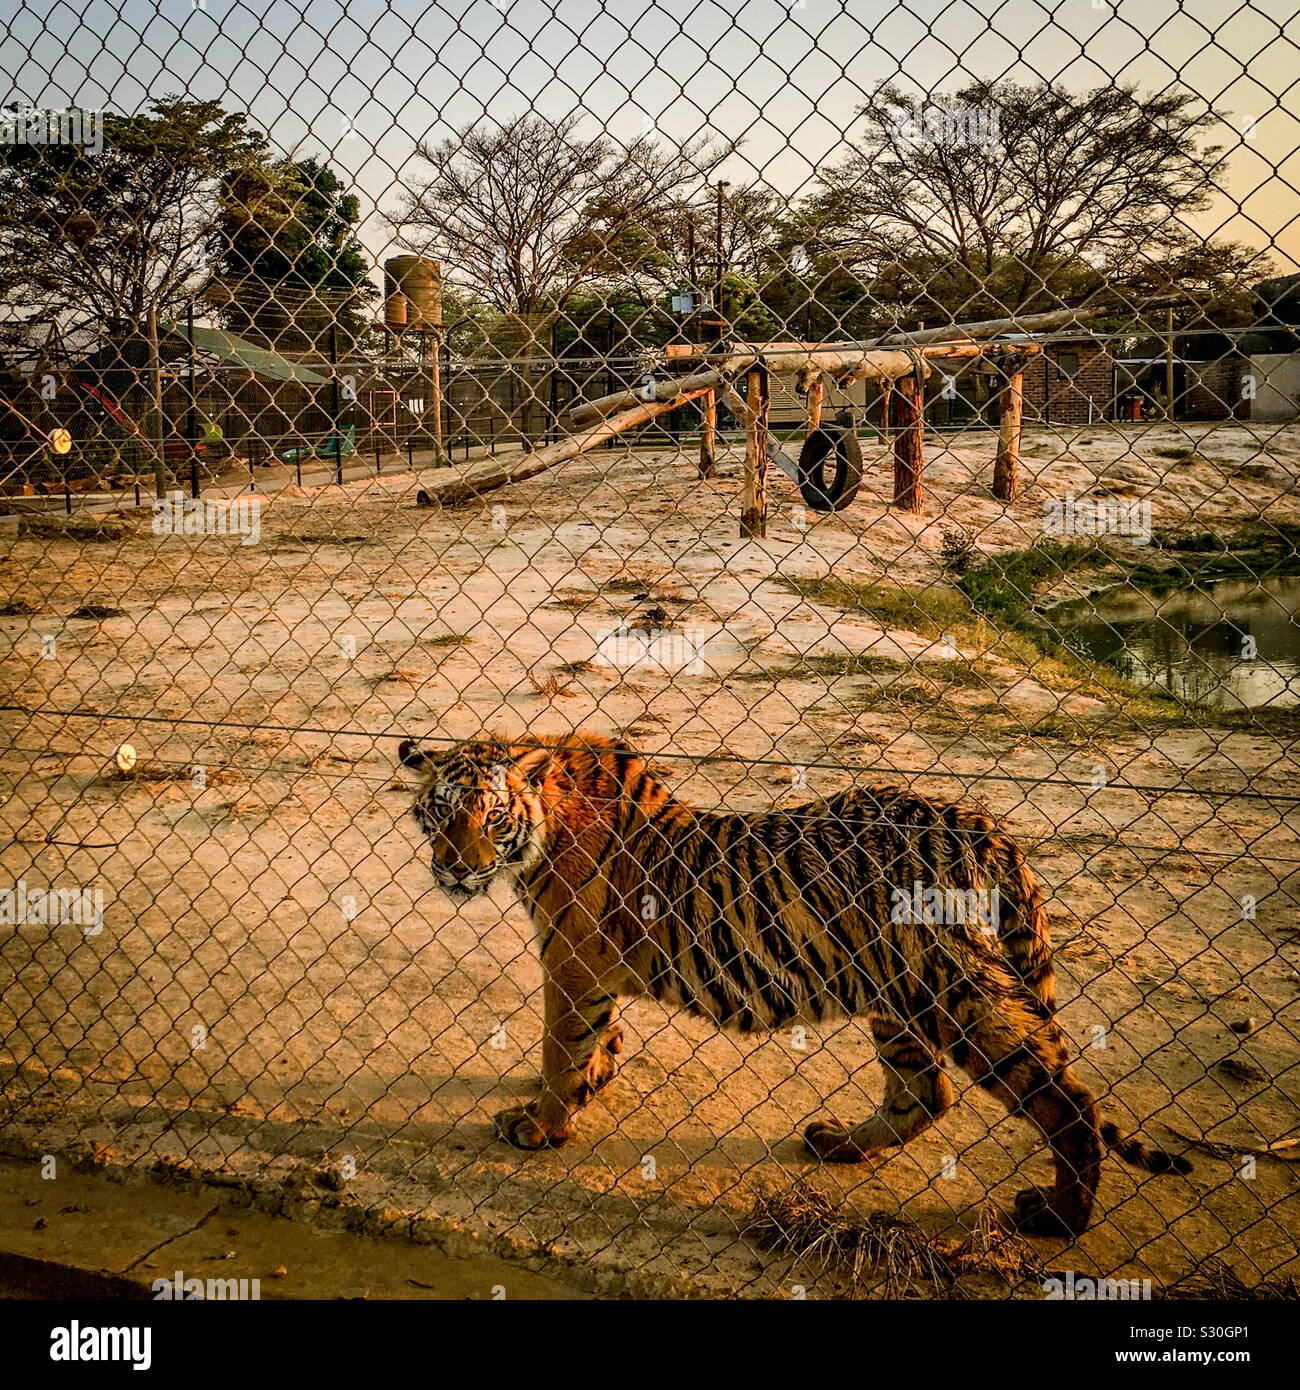 Tiger in der grossen Katze Zucht in Gefangenschaft, Limpopo Provinz, Südafrika. Viele dieser großen Katzen sind für die Trophäenjagd gezüchtet oder "Arzneimittel" Knochen nach Asien zu liefern. 2016. Stockfoto